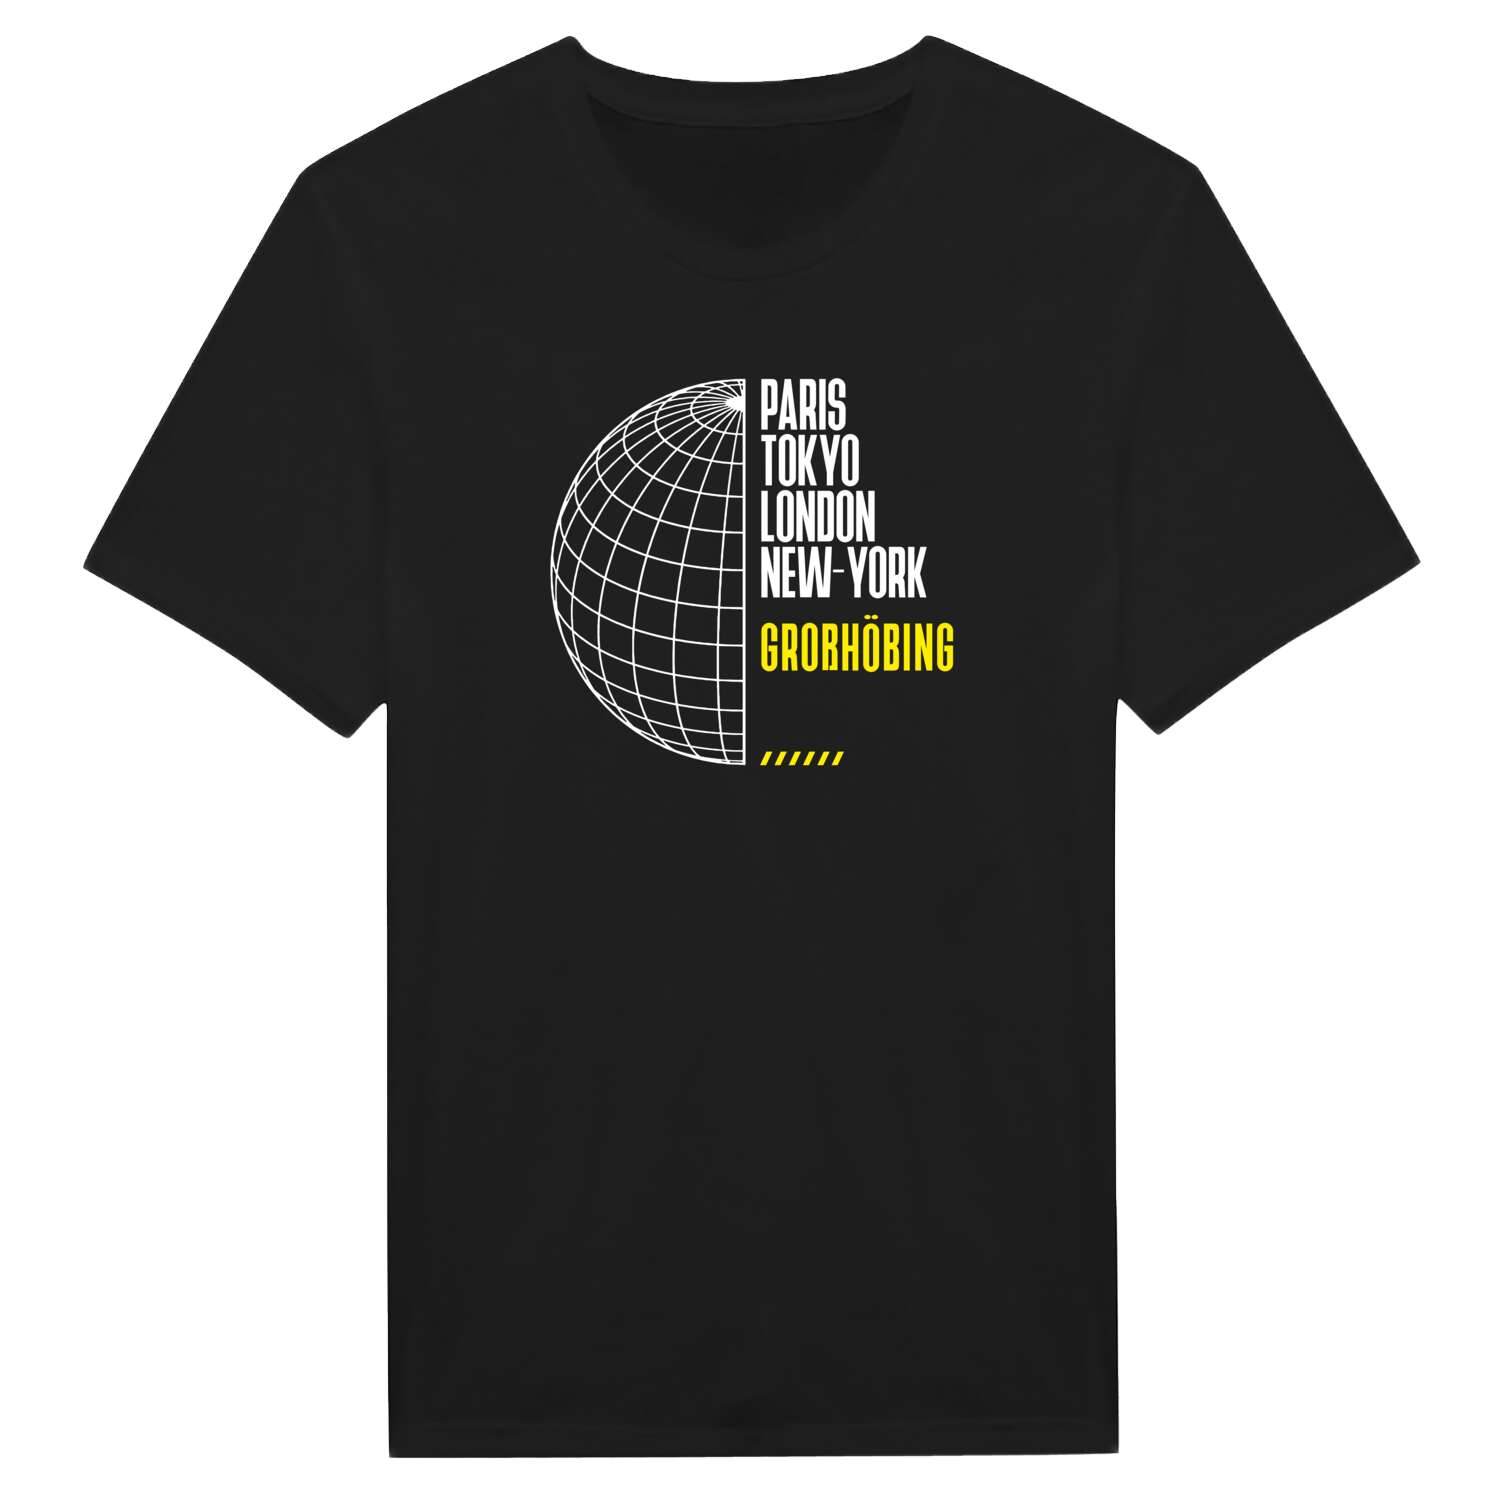 Großhöbing T-Shirt »Paris Tokyo London«